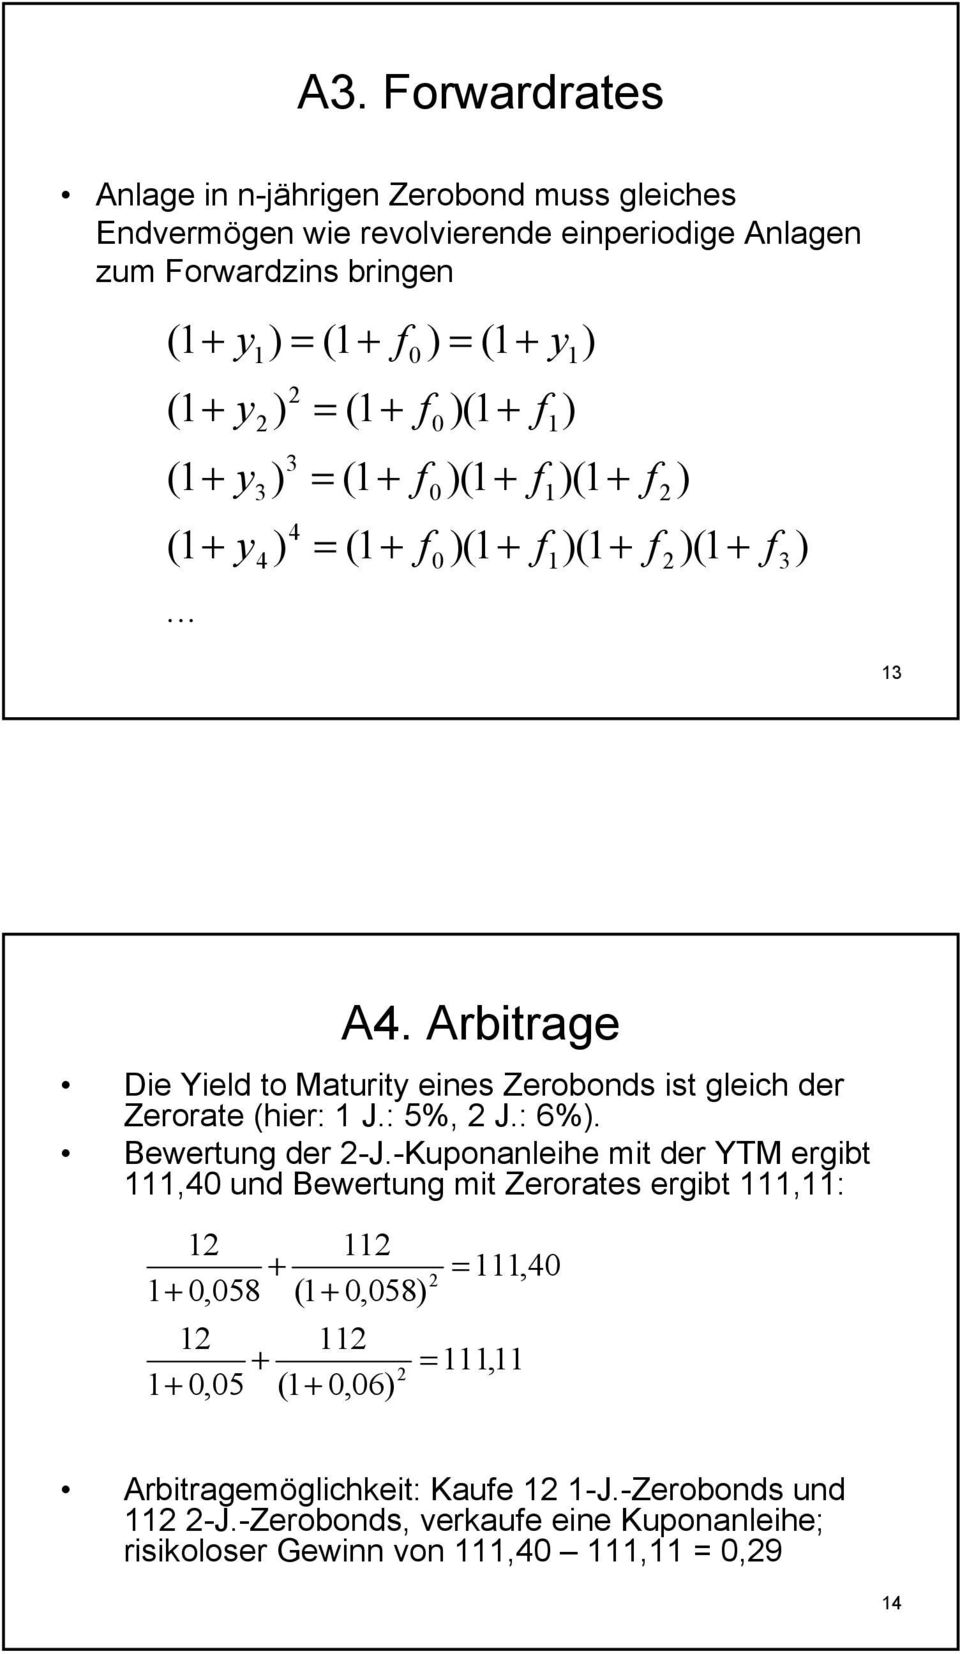 Arbitrage Die Yield to Maturity eies Zerobods ist gleich der Zerorate (hier: J.: 5%, J.: 6%. Bewertug der -J.